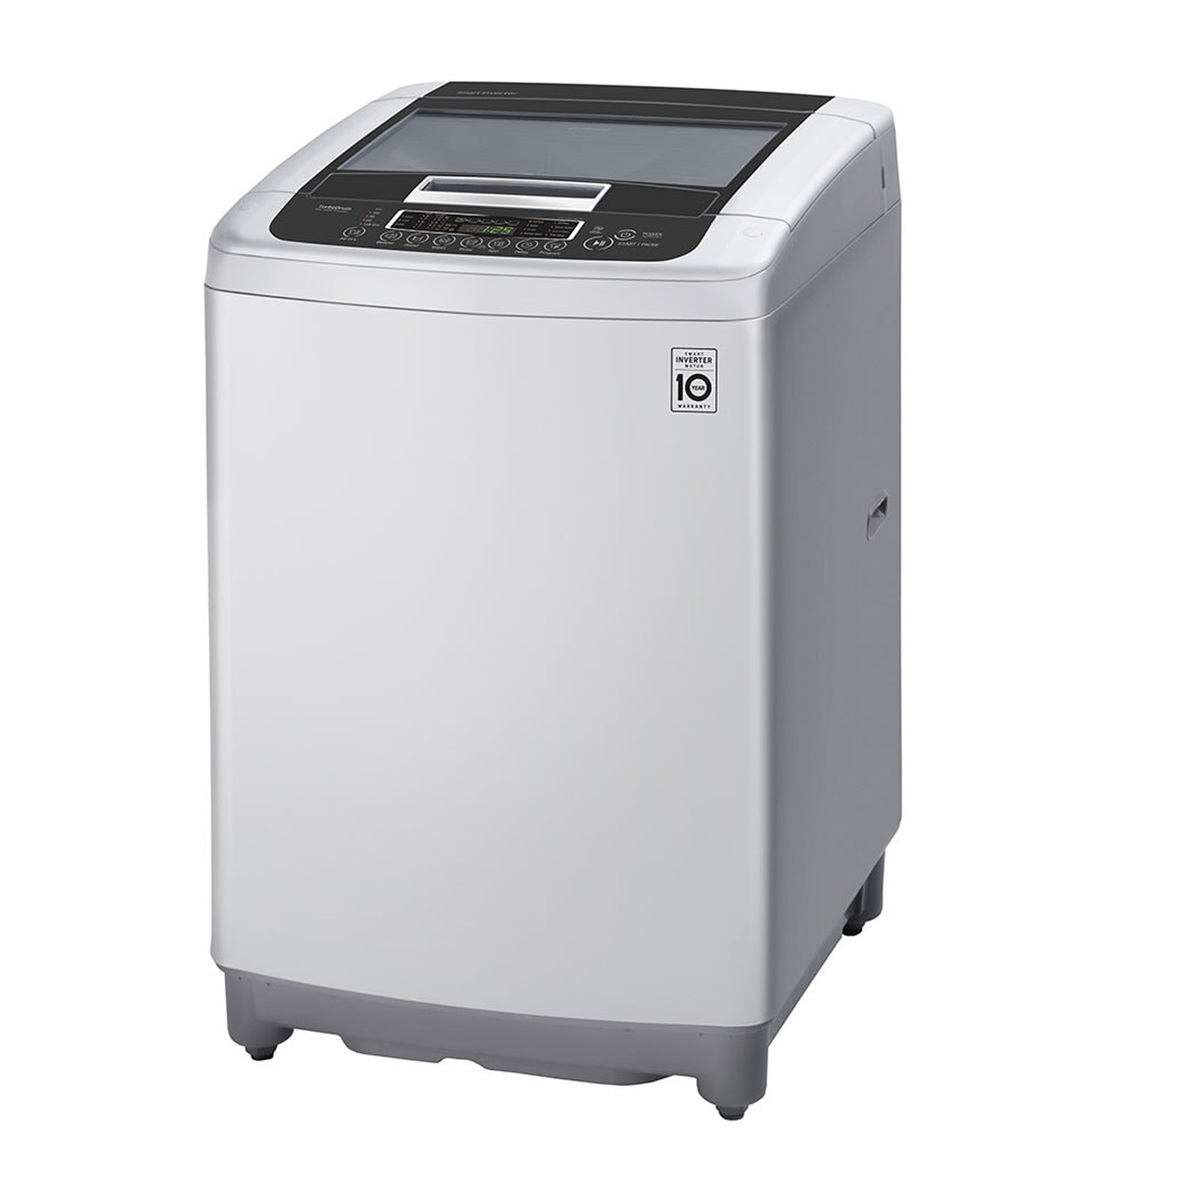 LG Top Load Washing Machine T1369NEHTF 13Kg